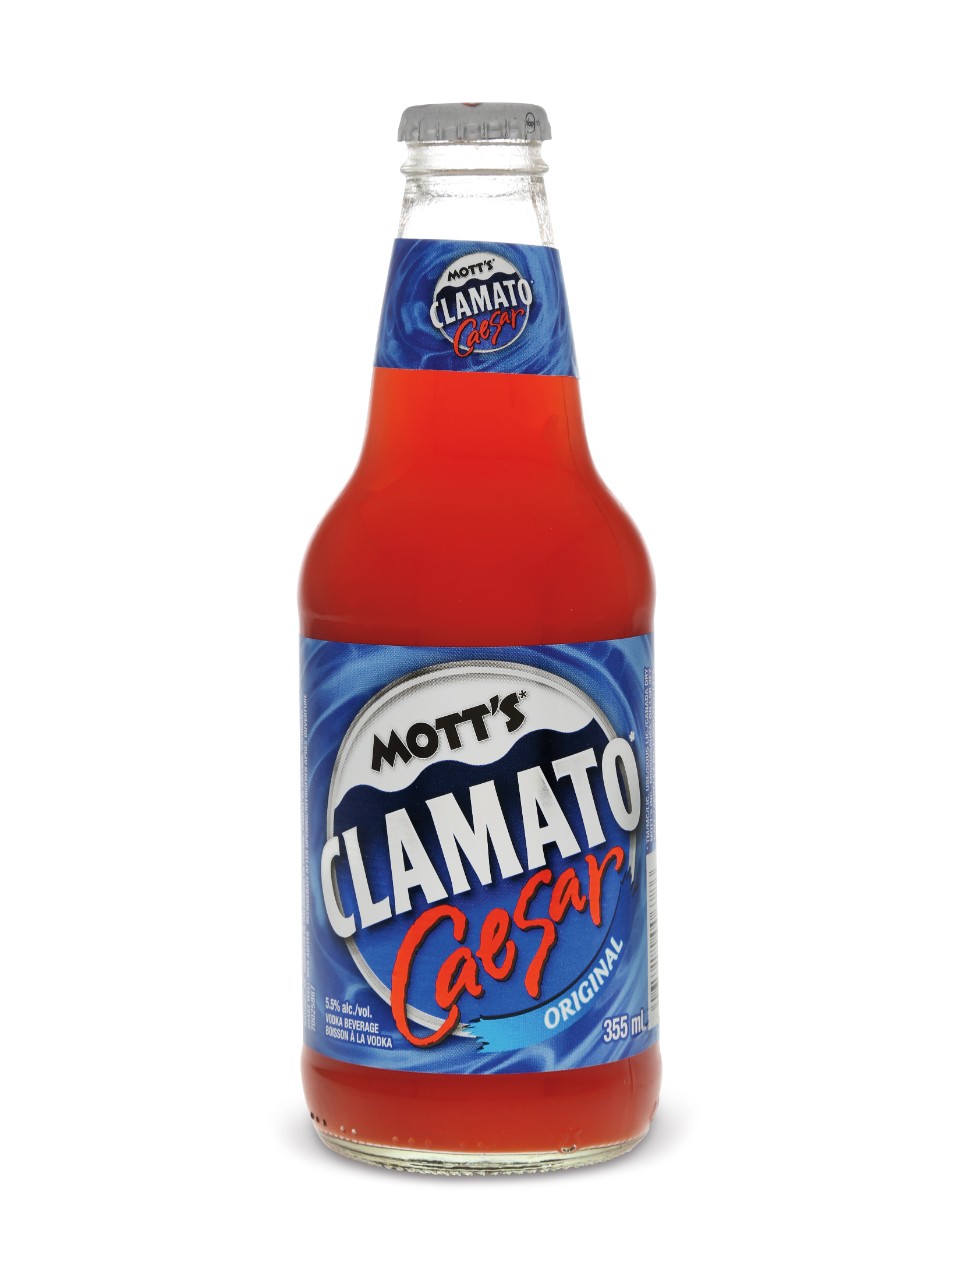 Mott's Clamato Caesar Original